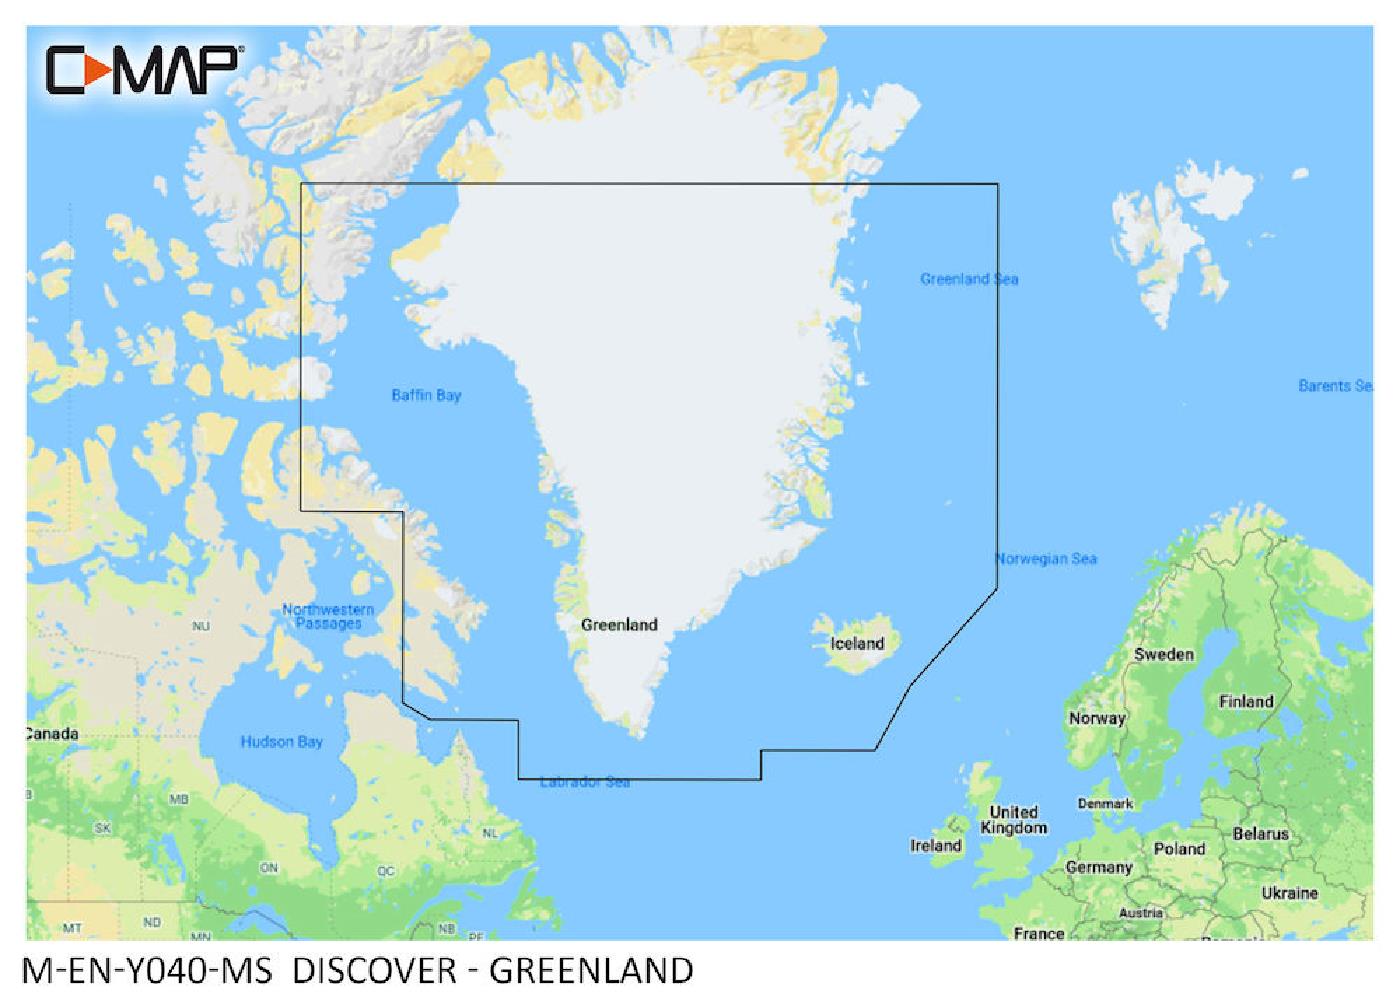 C-MAP Discover Greenland M-EN-Y040-MS